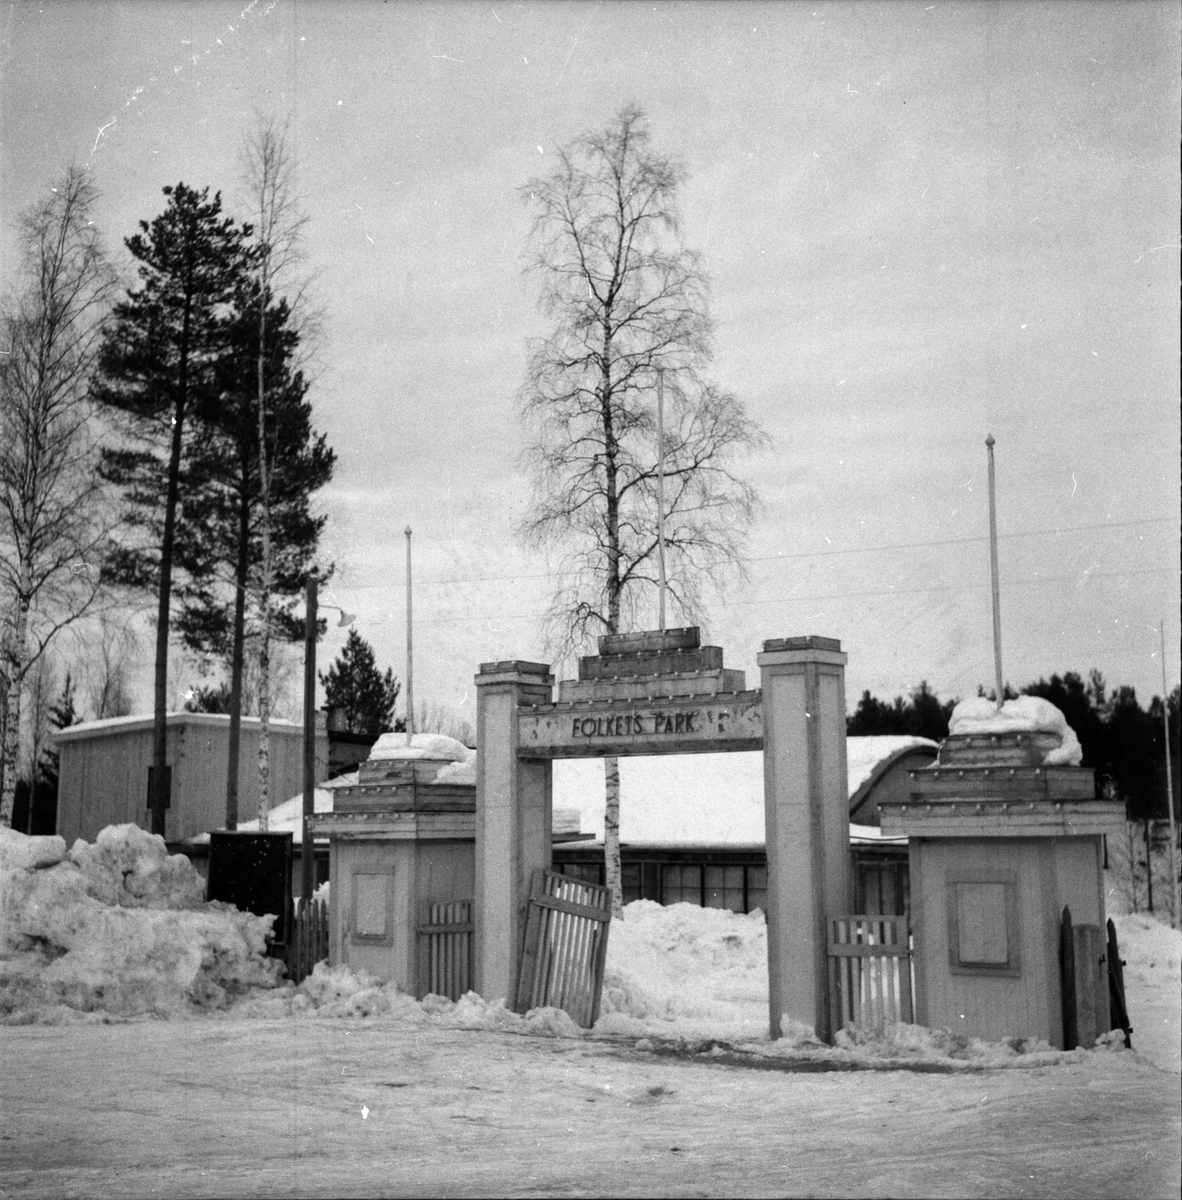 Ingång till Folkets park, Furudal,
Orenappet gör upp,
22 Febr 1959